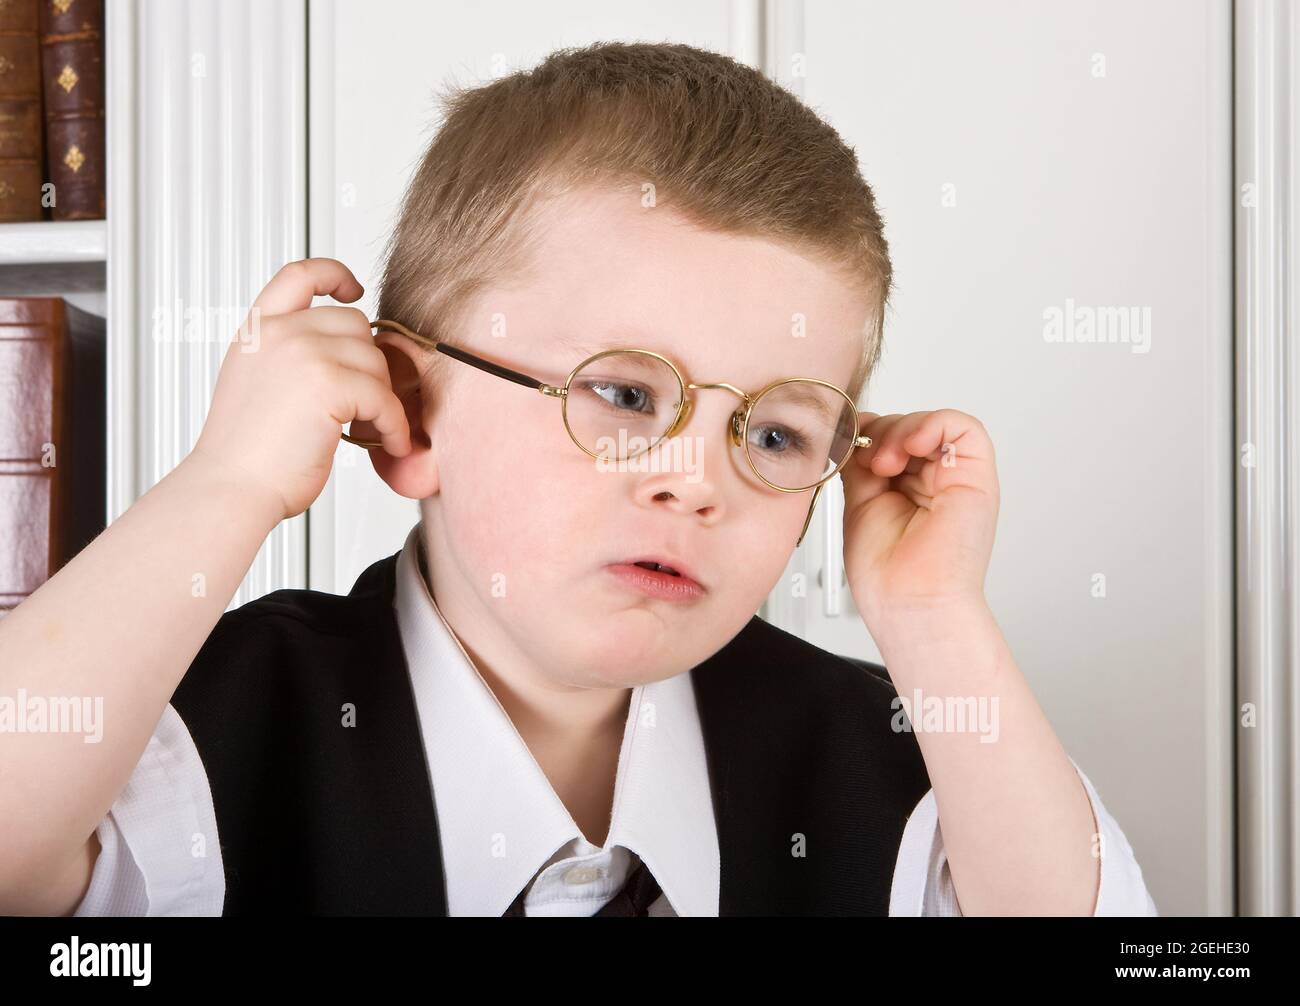 Vierjähriger Junge, der als Regisseur mit Brille gekleidet war Stockfoto